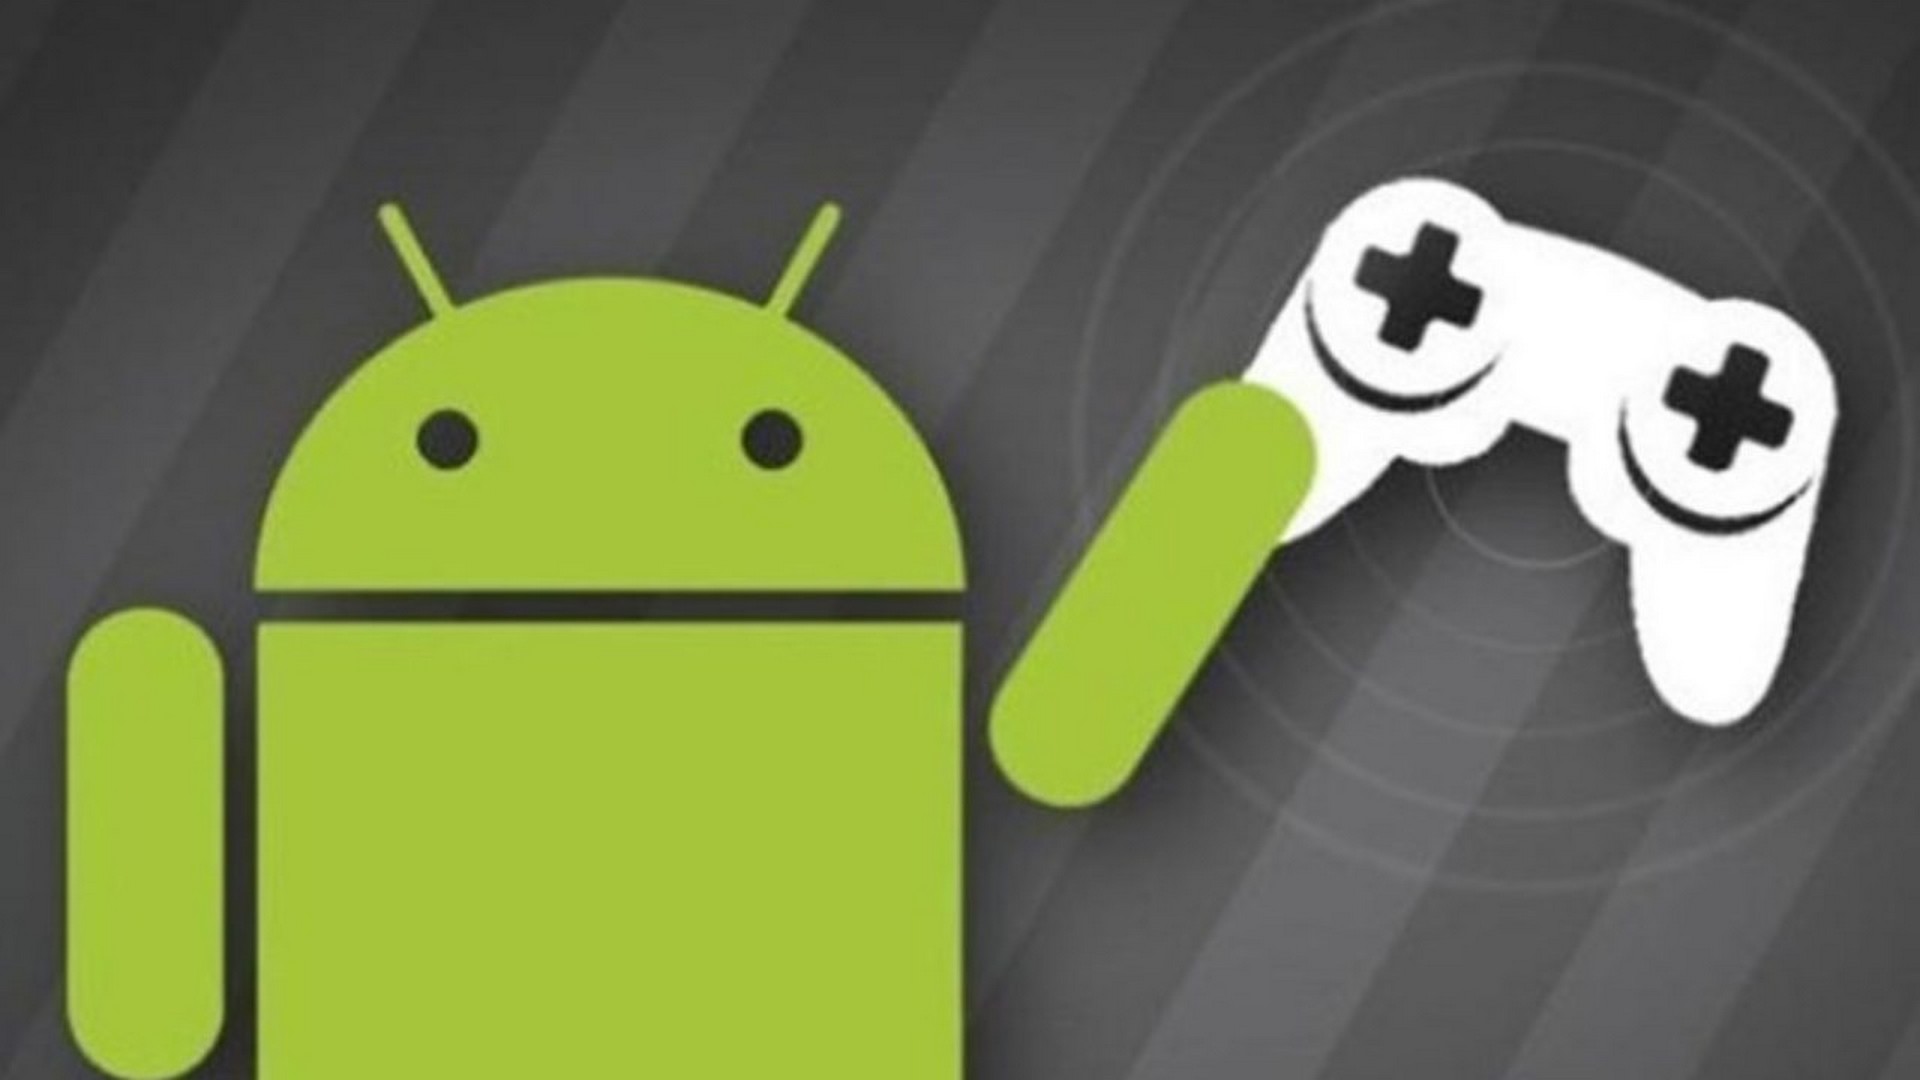 Android развлечение. Андроид. Android игры. Игровые Android-приложения. Игры на андроид фото.